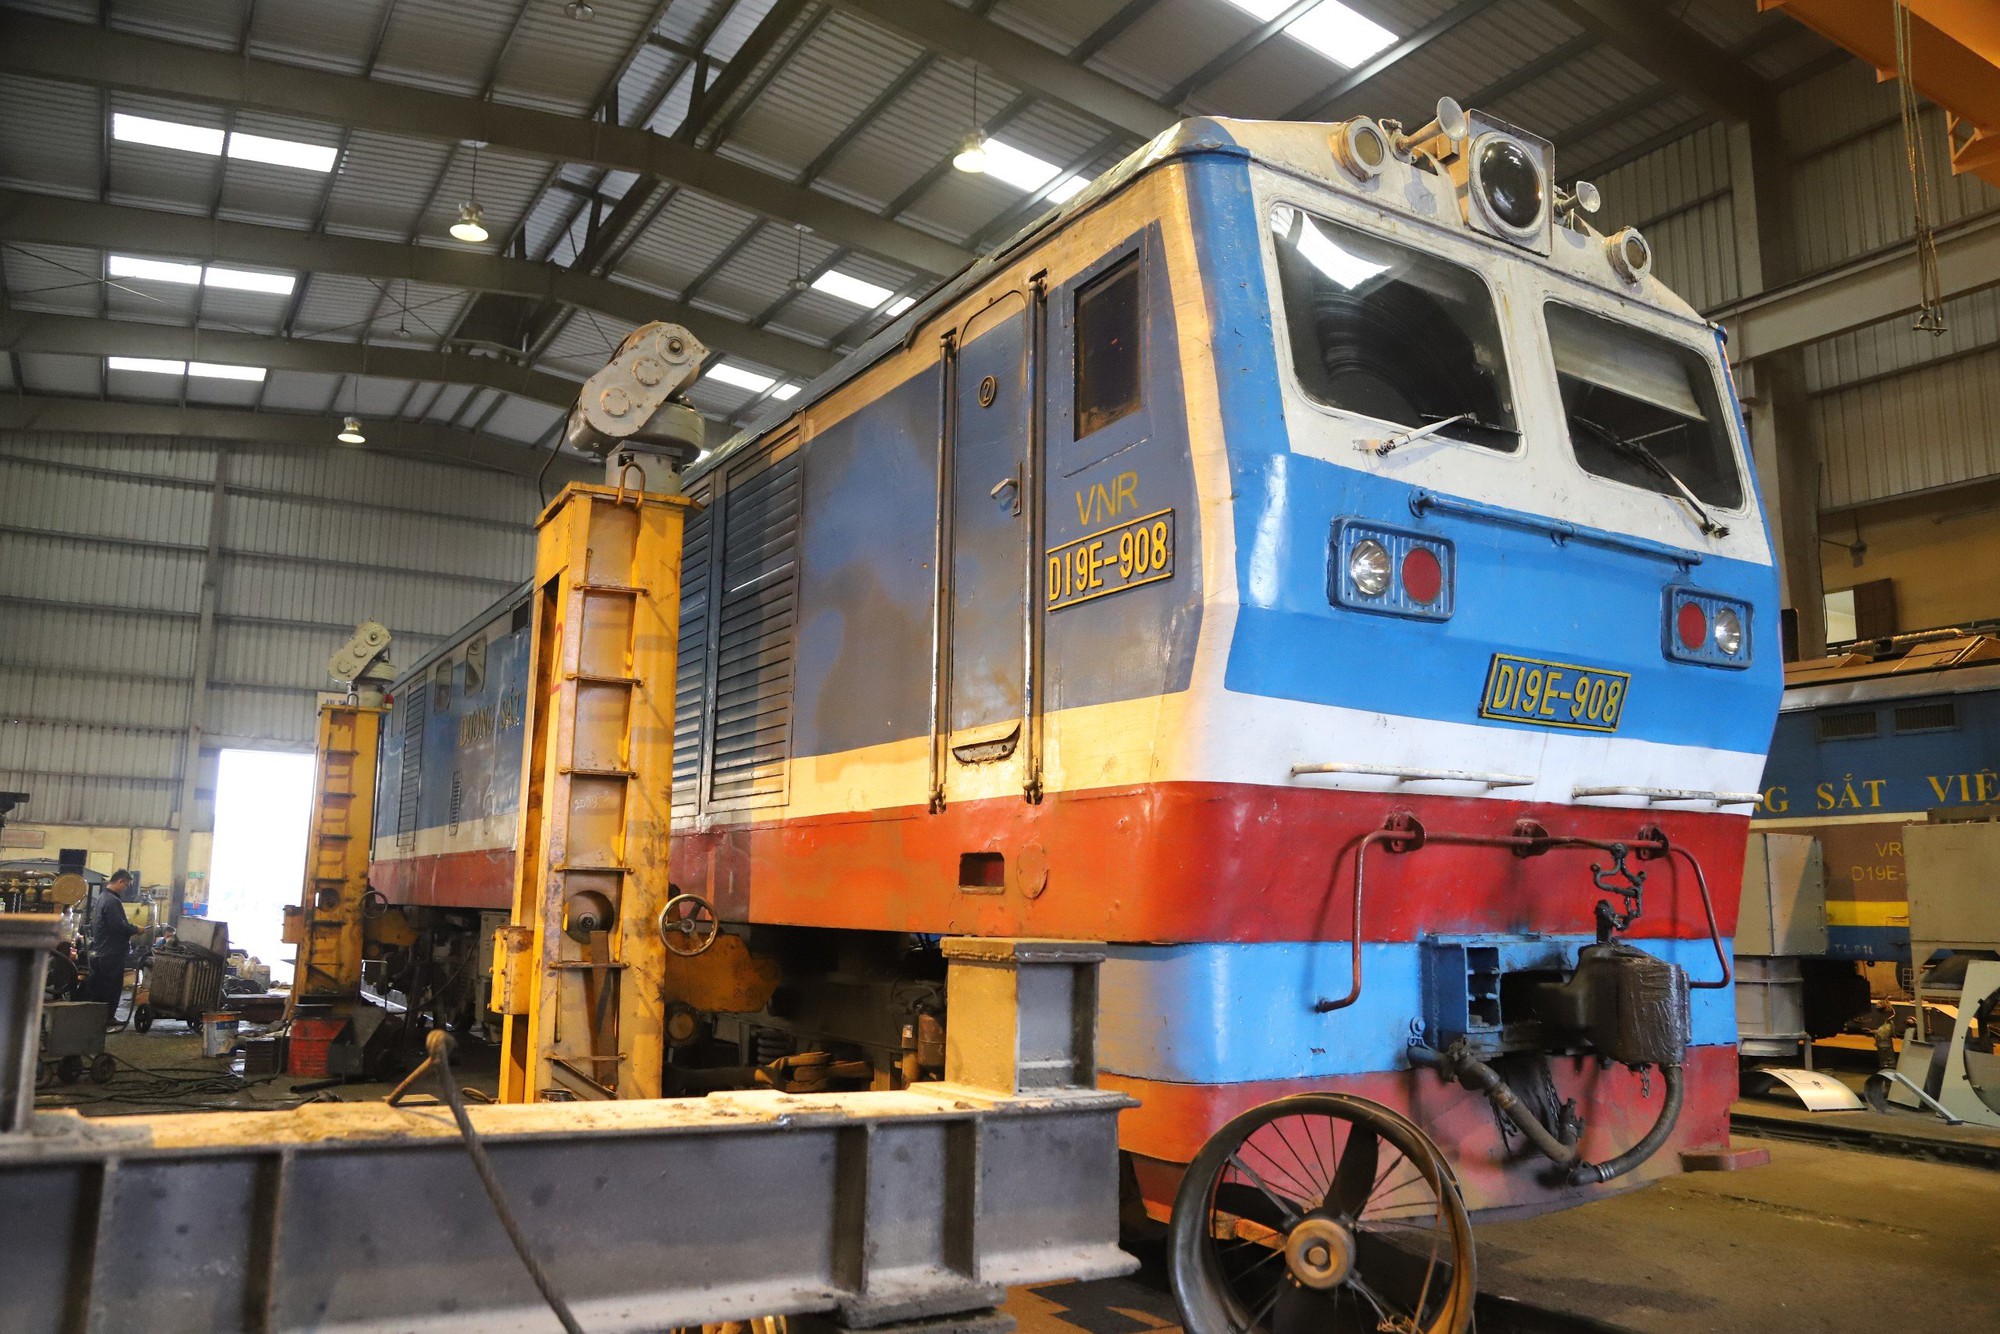 Khá phá toa tàu, đầu máy của ngành đường sắt đang sửa chữa nâng cấp - Ảnh 1.